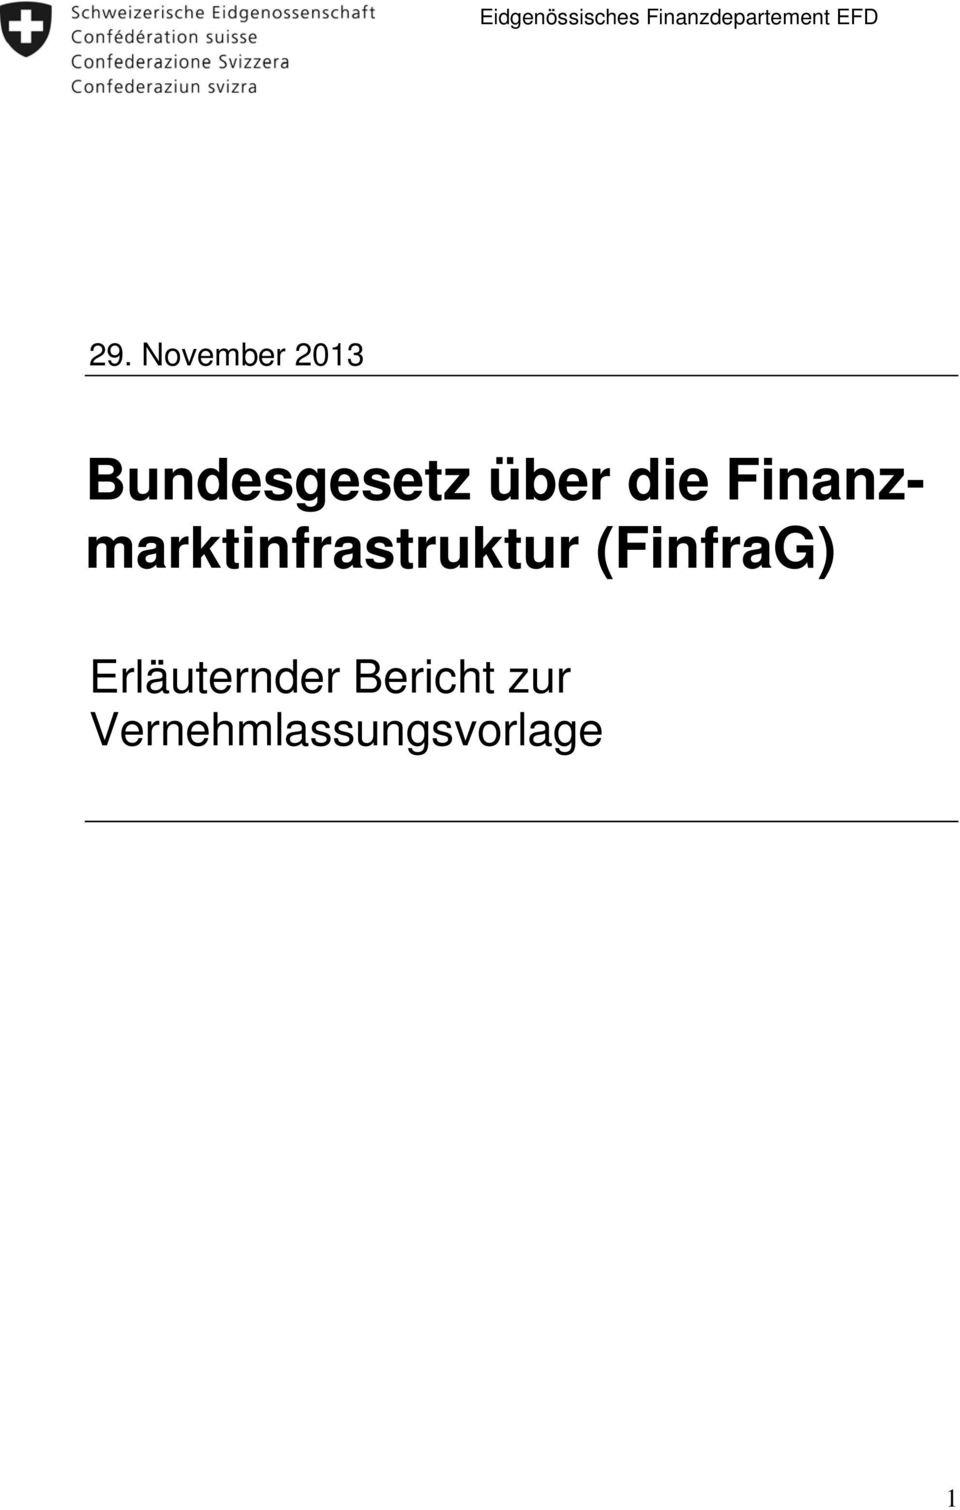 Finanzmarktinfrastruktur (FinfraG)